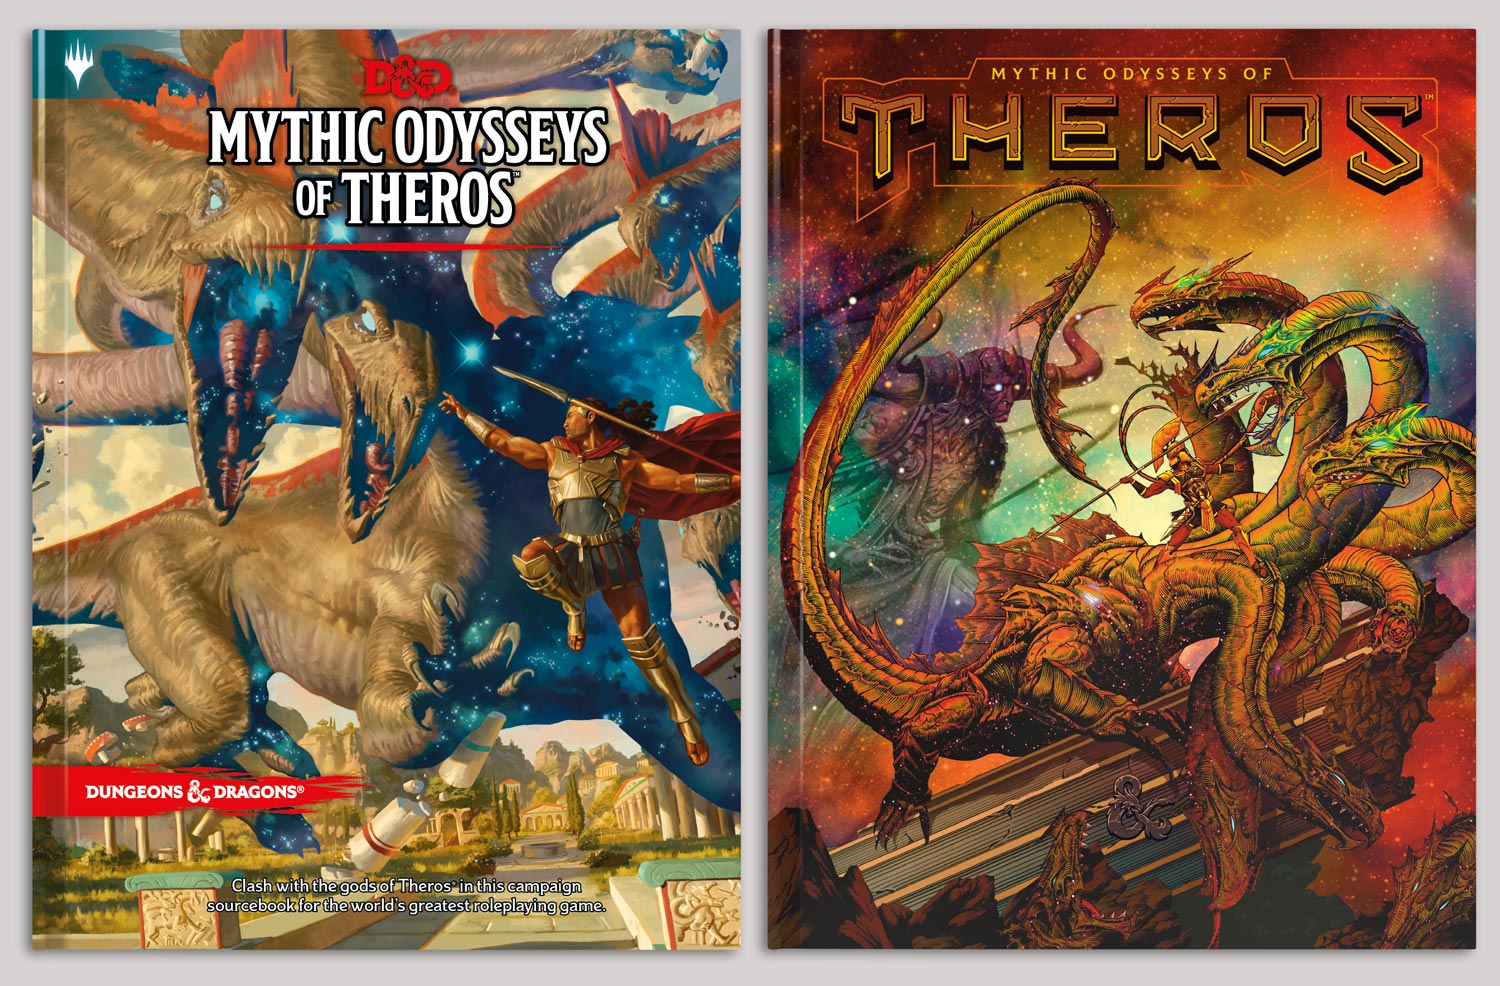 Сатиры, боги и мифы Древней Греции: какой будет новая книга Dungeons & Dragons? 1